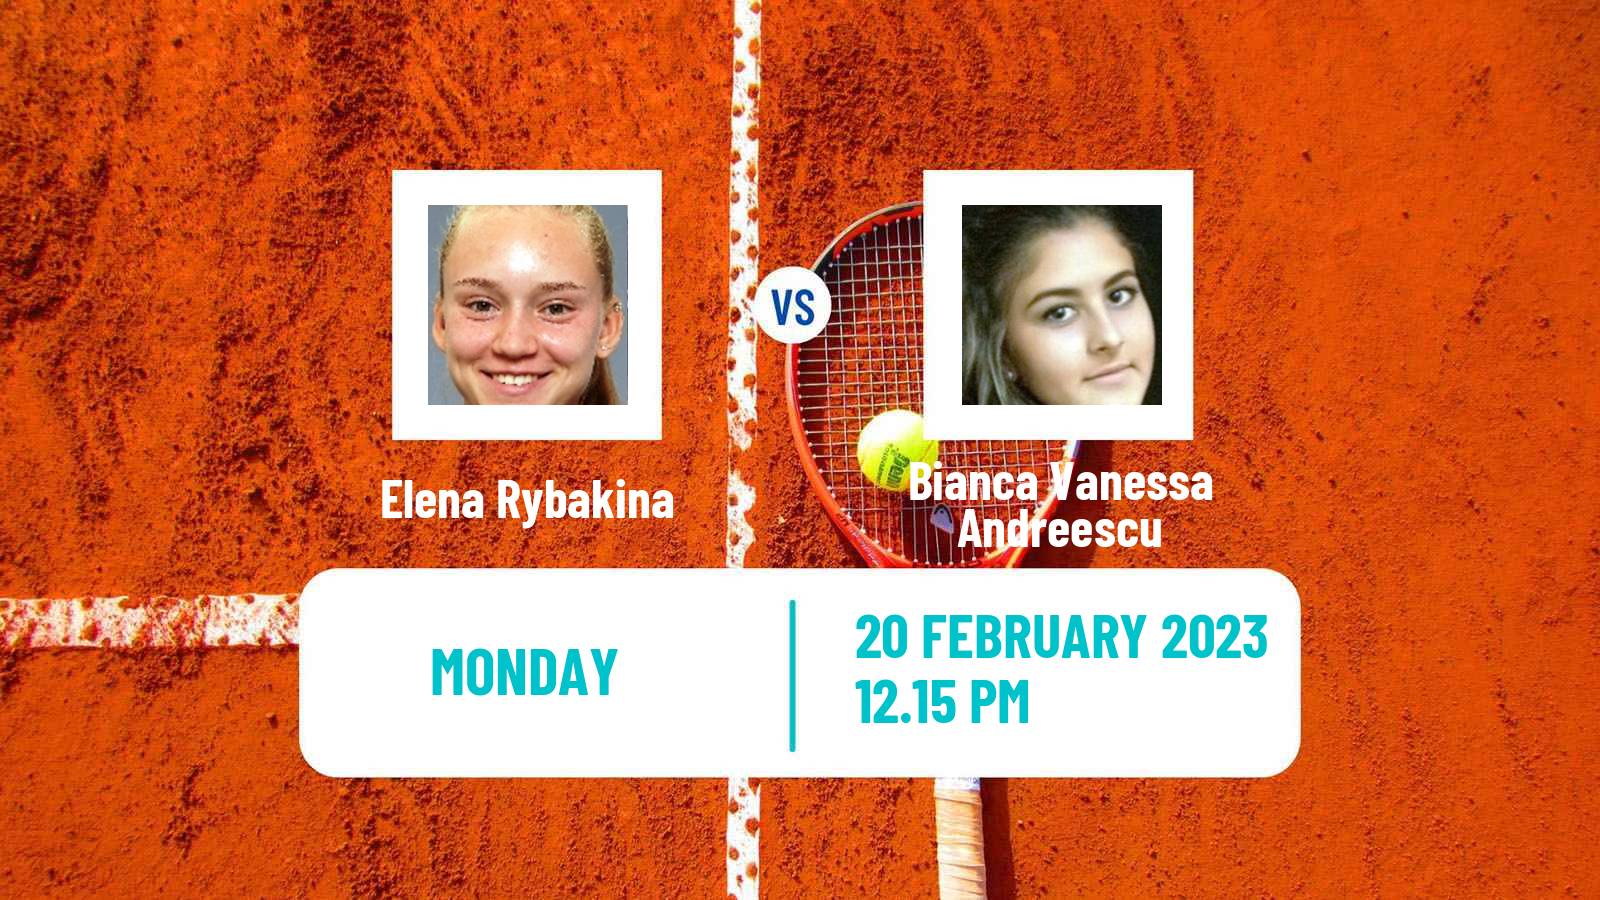 Tennis WTA Dubai Elena Rybakina - Bianca Vanessa Andreescu